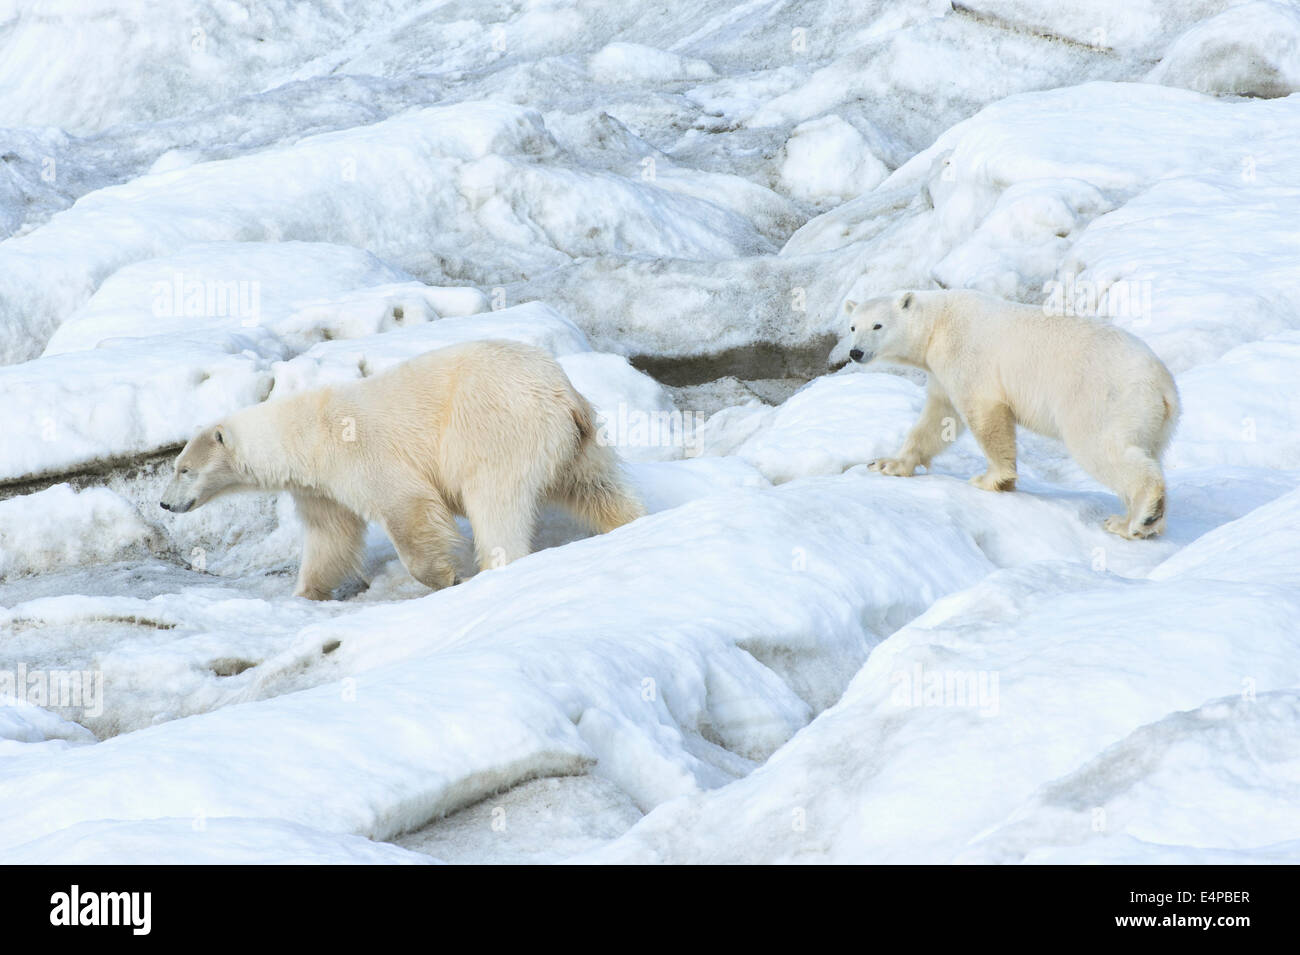 Madre de oso polar con dos años cub (Ursus maritimus) caminando sobre el hielo, la isla de Wrangel, Mar Chuckchi, Lejano Oriente ruso Foto de stock